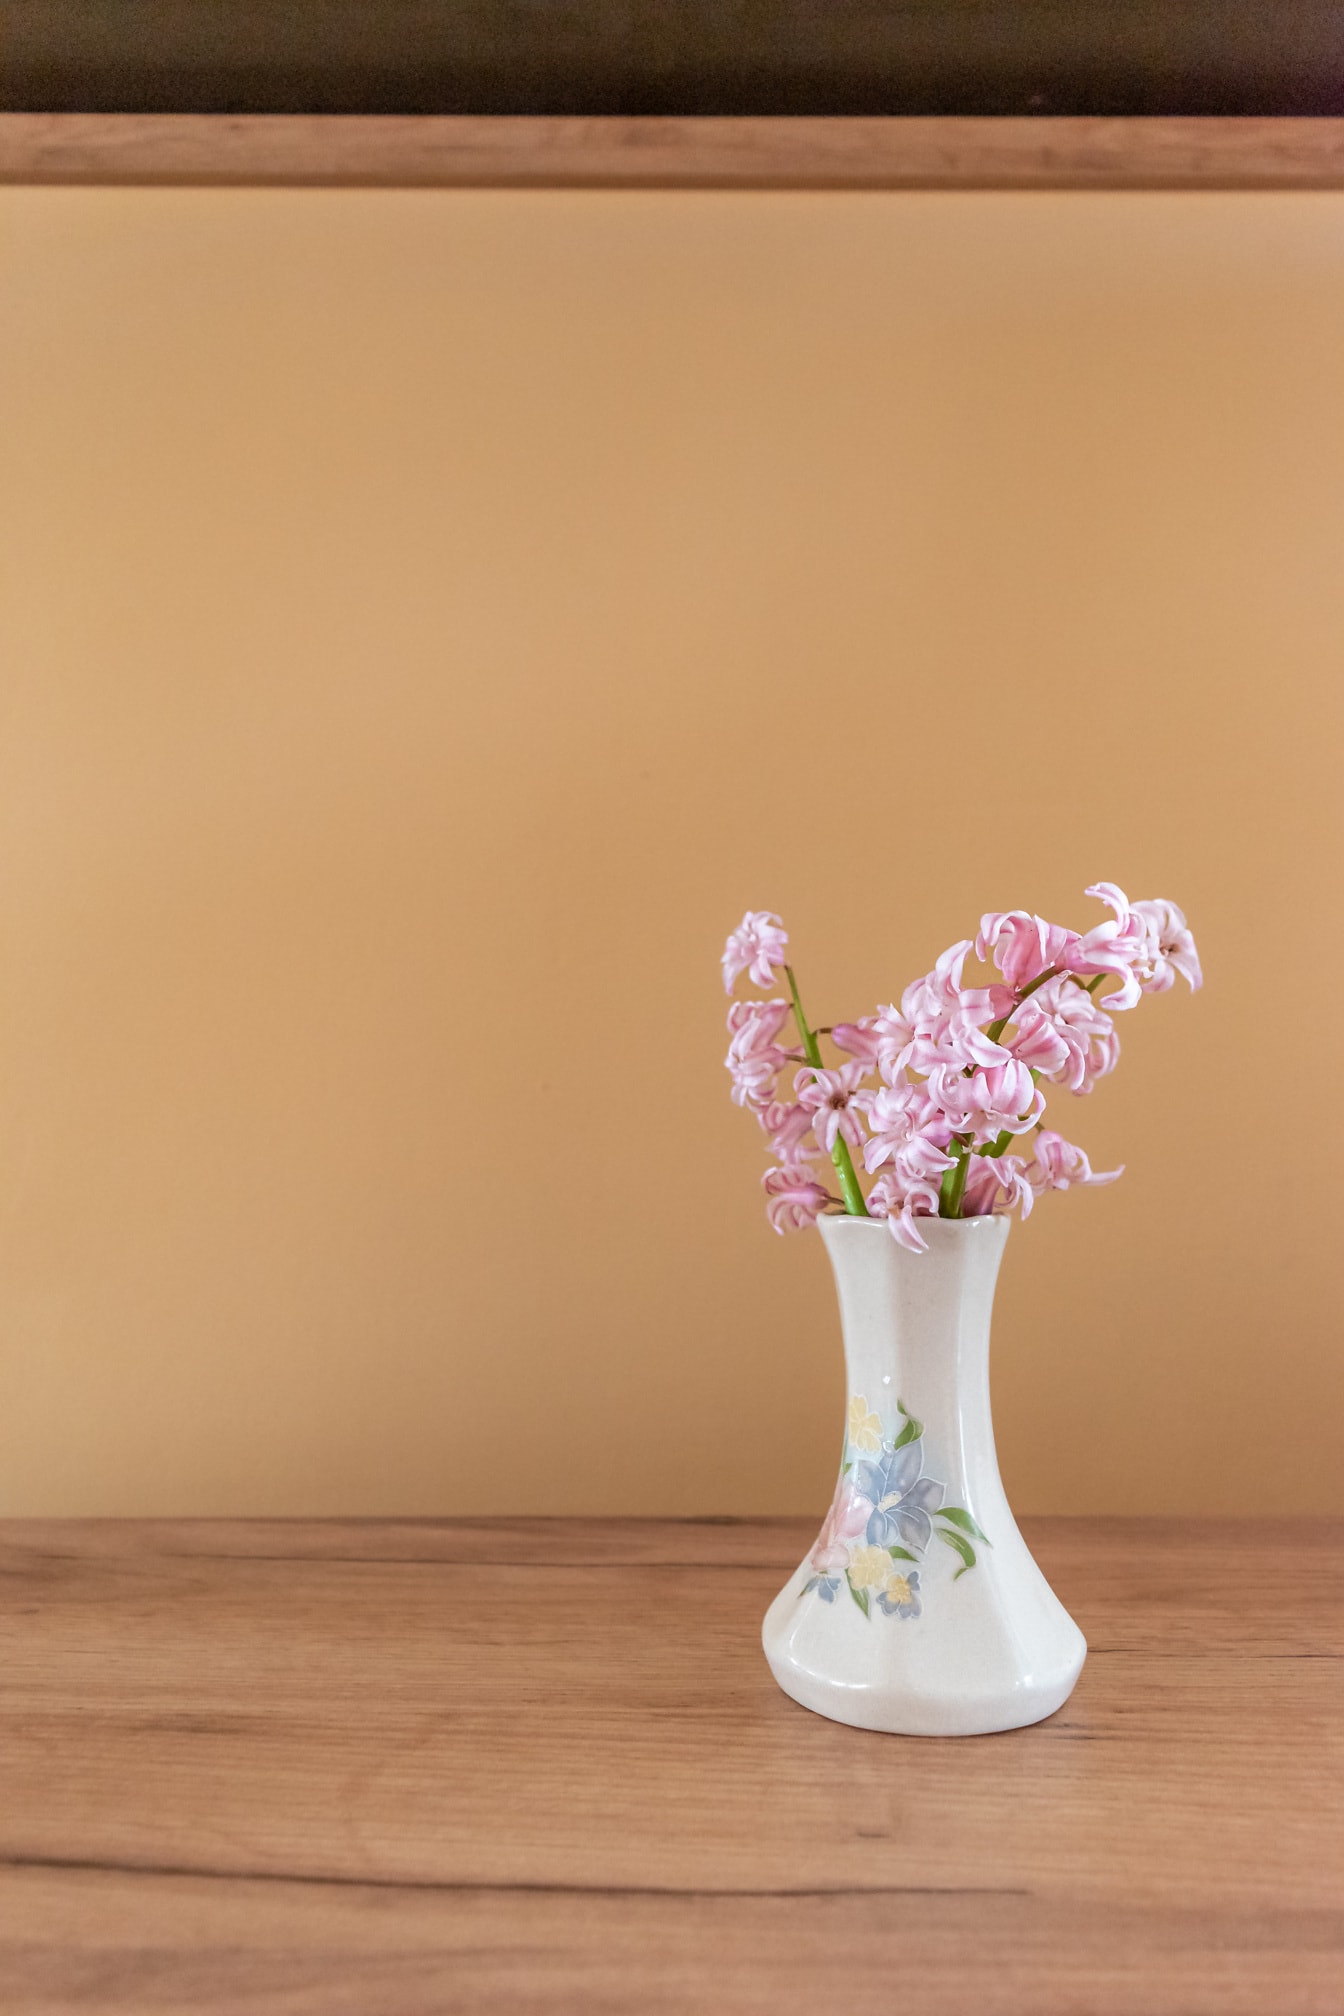 花瓶中鲜艳的粉红色风信子花